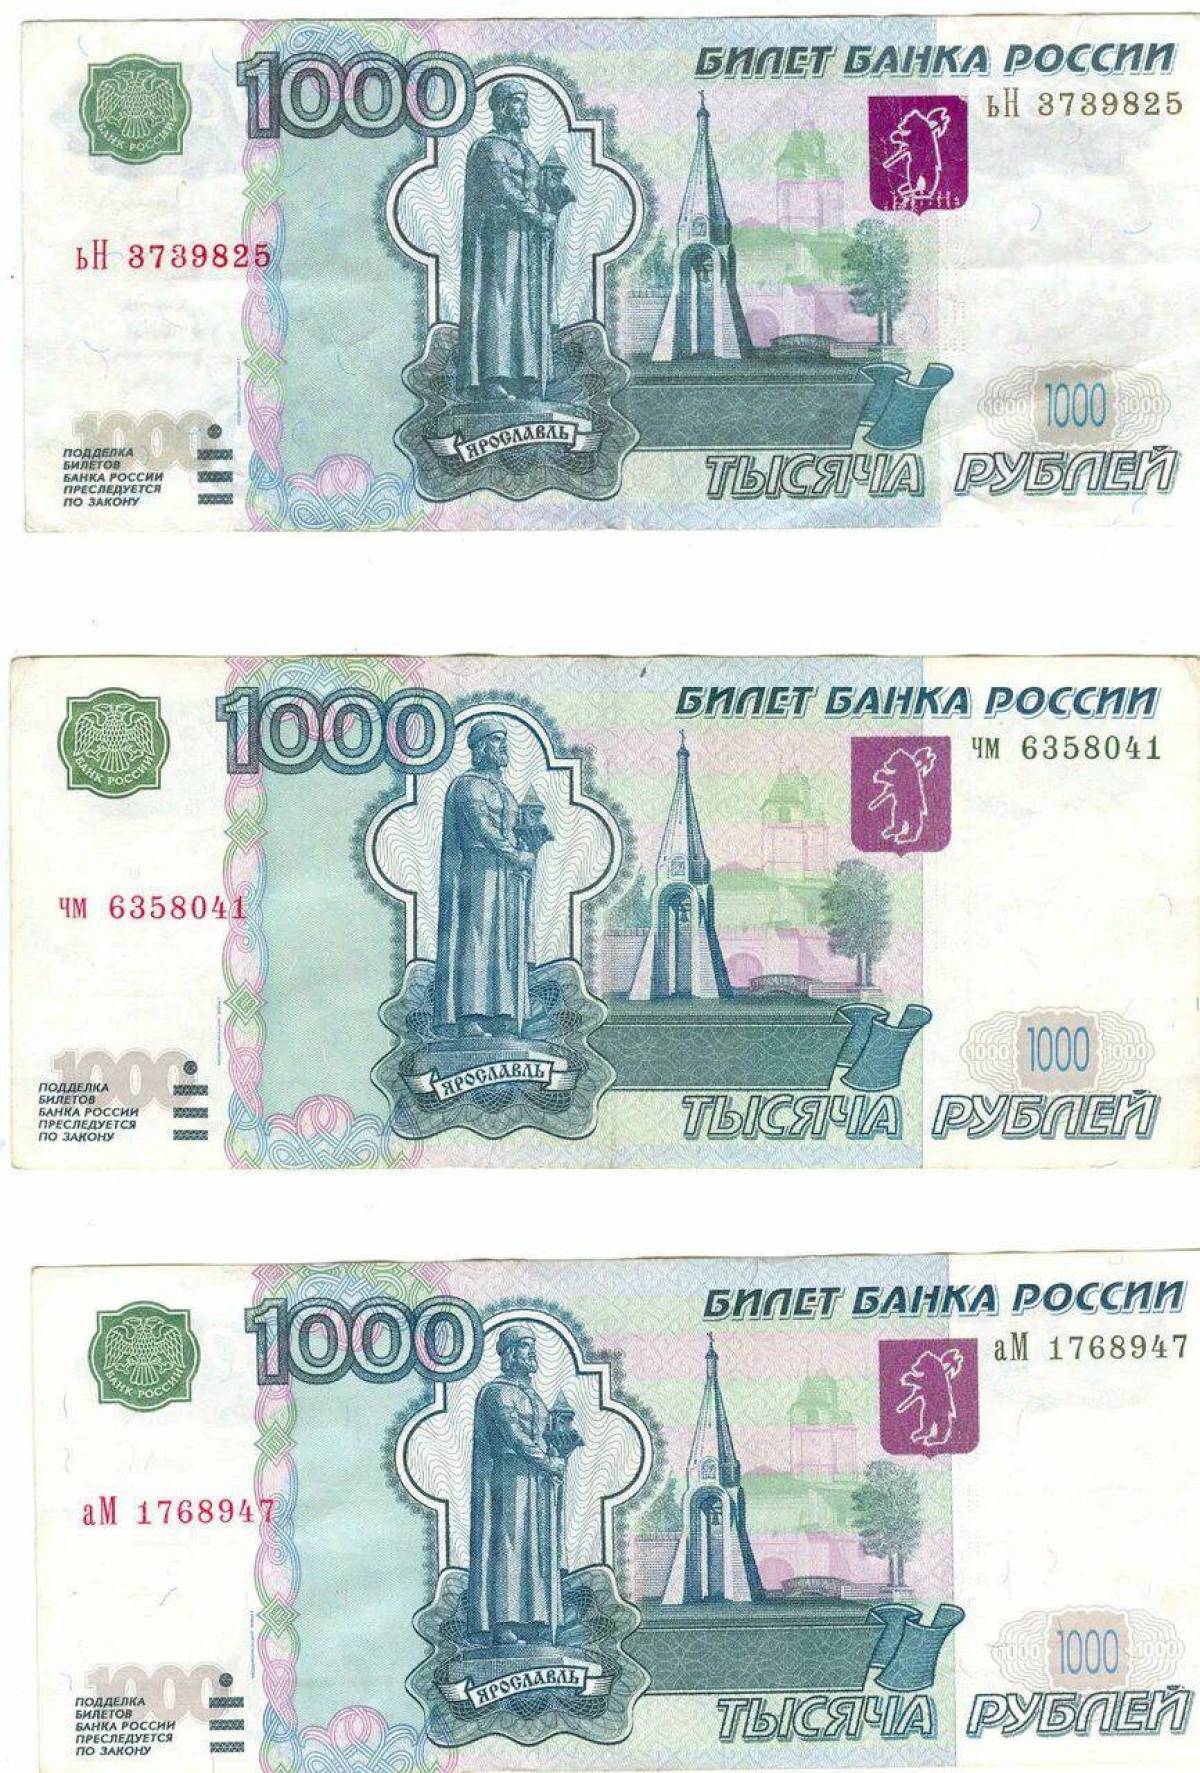 1000 рублей в магазинах. 1000 Рублей купюра для печати. 1000 Рублей печать. Банкнота 1000 рублей для печати. Тысяча рублей для печати.